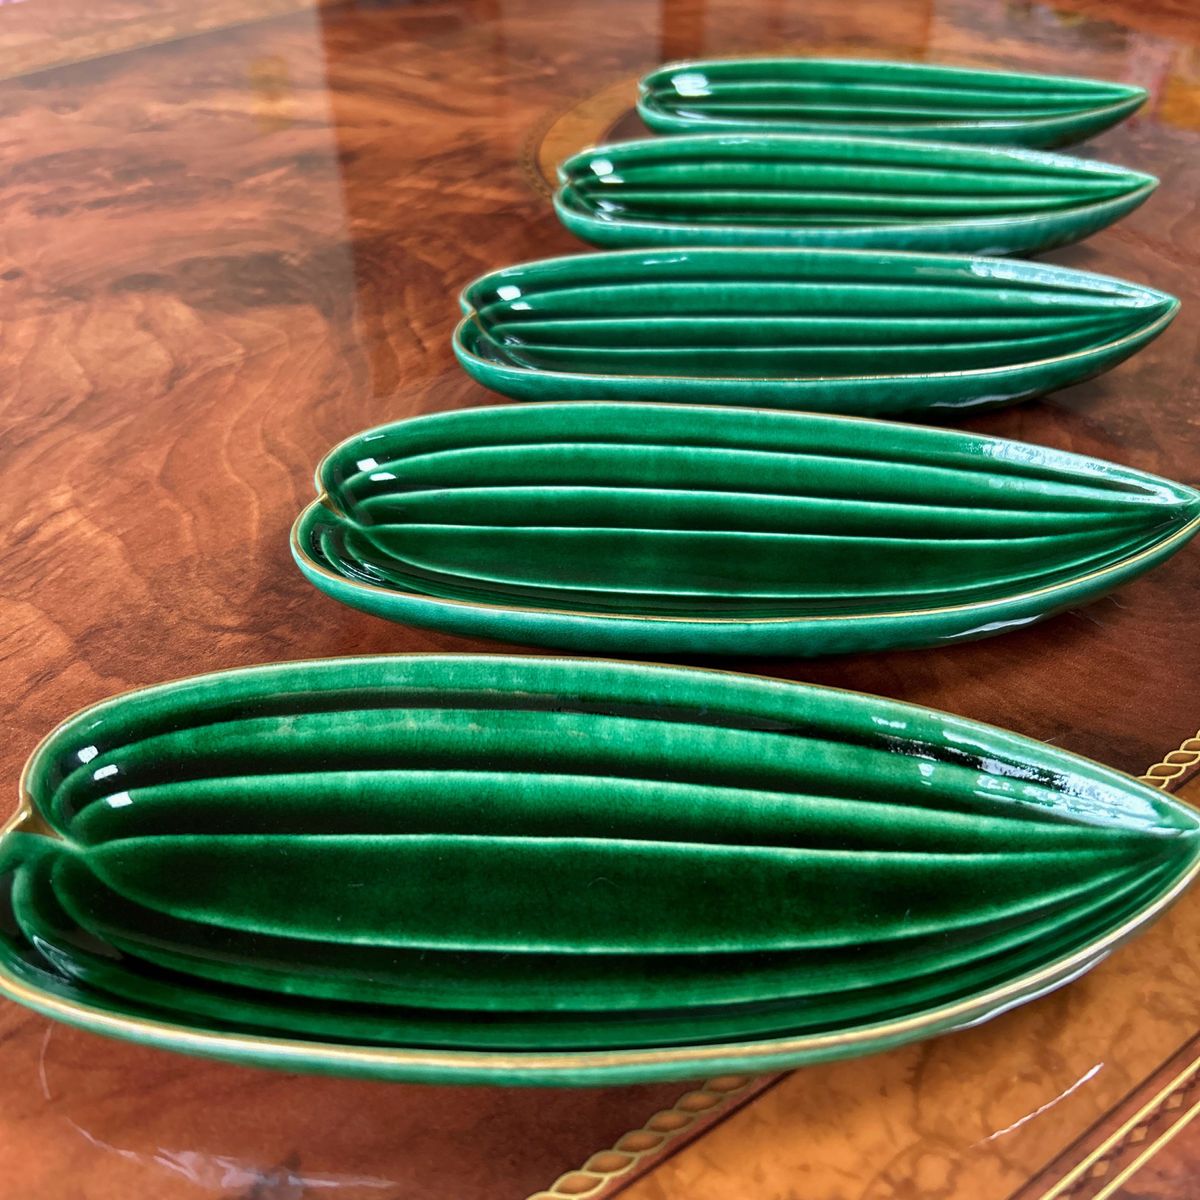 たち吉特選 青嵐 笹型 長皿揃 5枚セット 笹舟型皿 刺身皿 織部 和食器